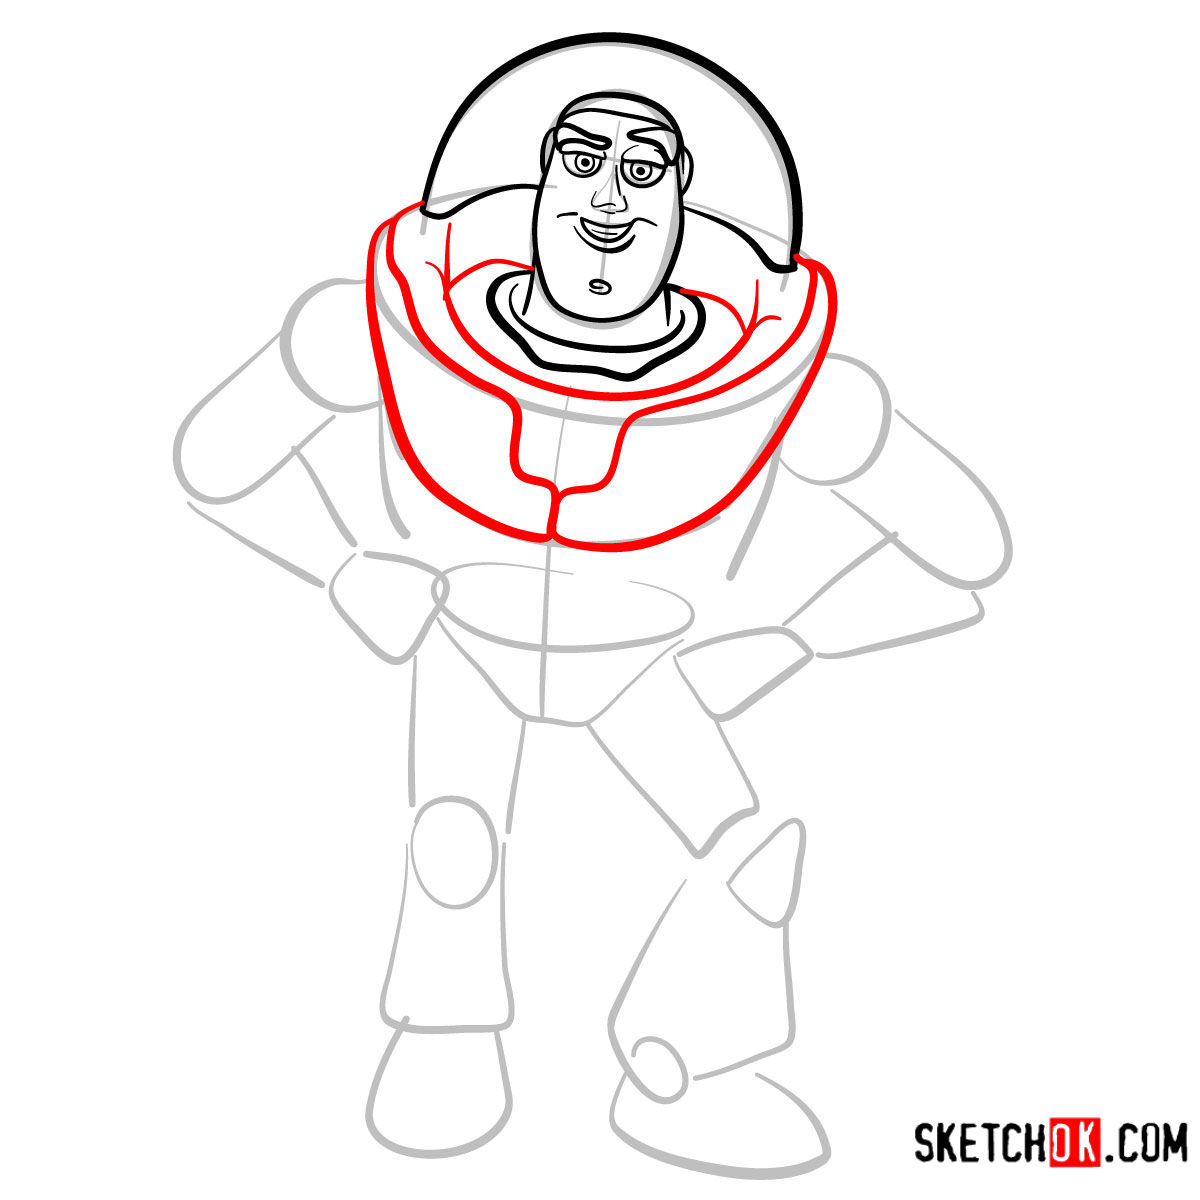 How to draw Buzz Lightyear | Toy Story - step 06